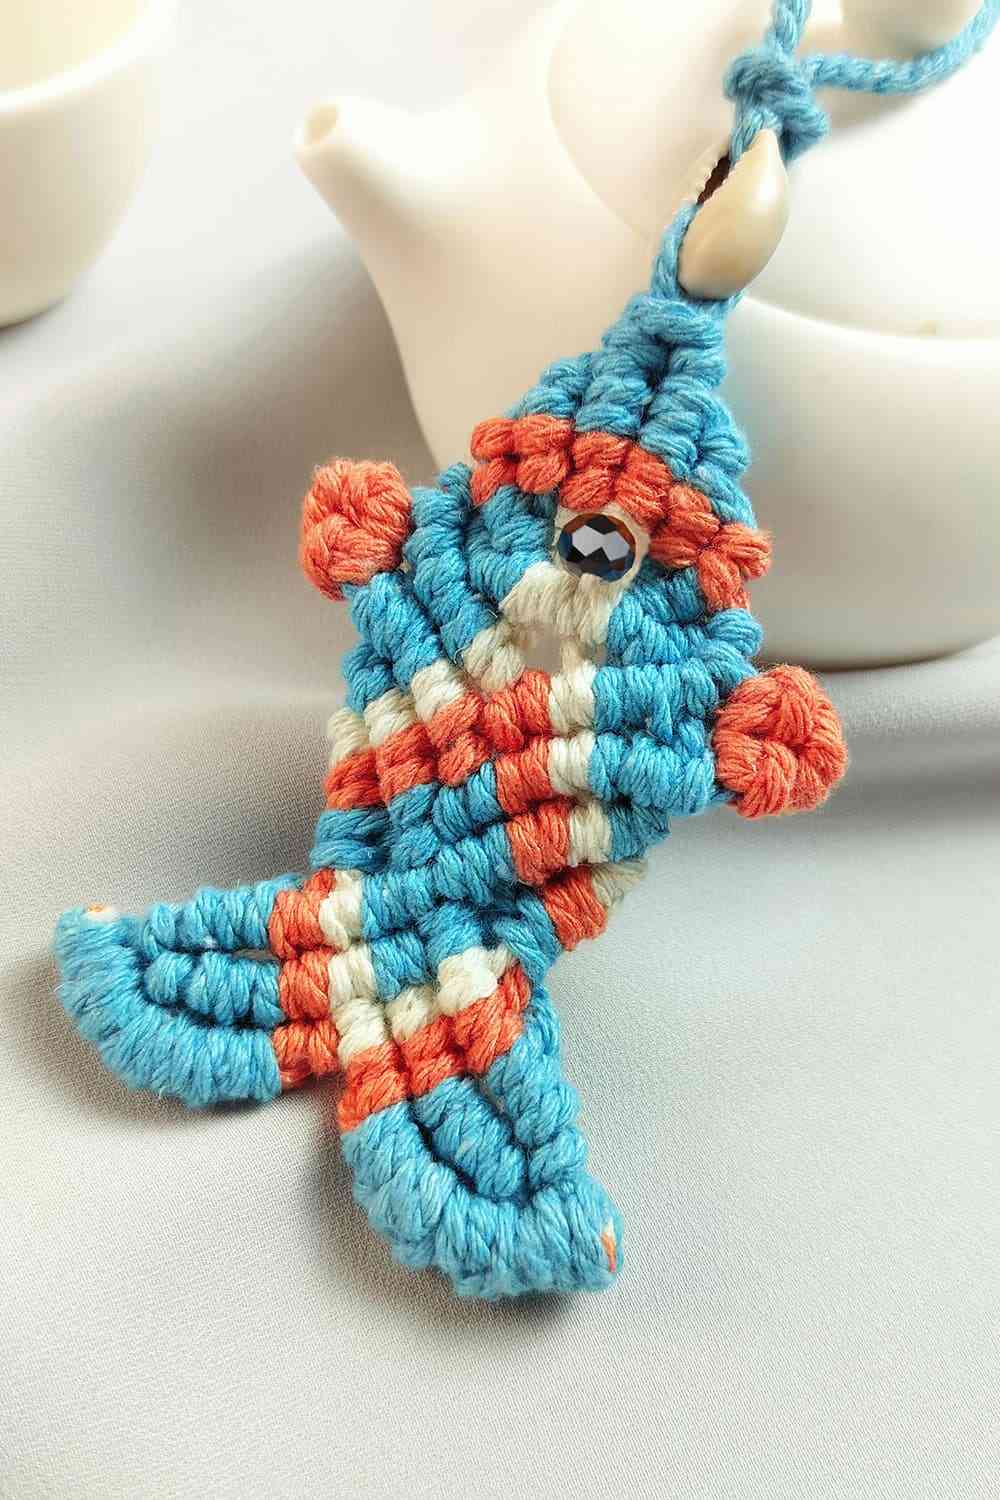 Cotton Cord Fish Shape Pendant Necklace